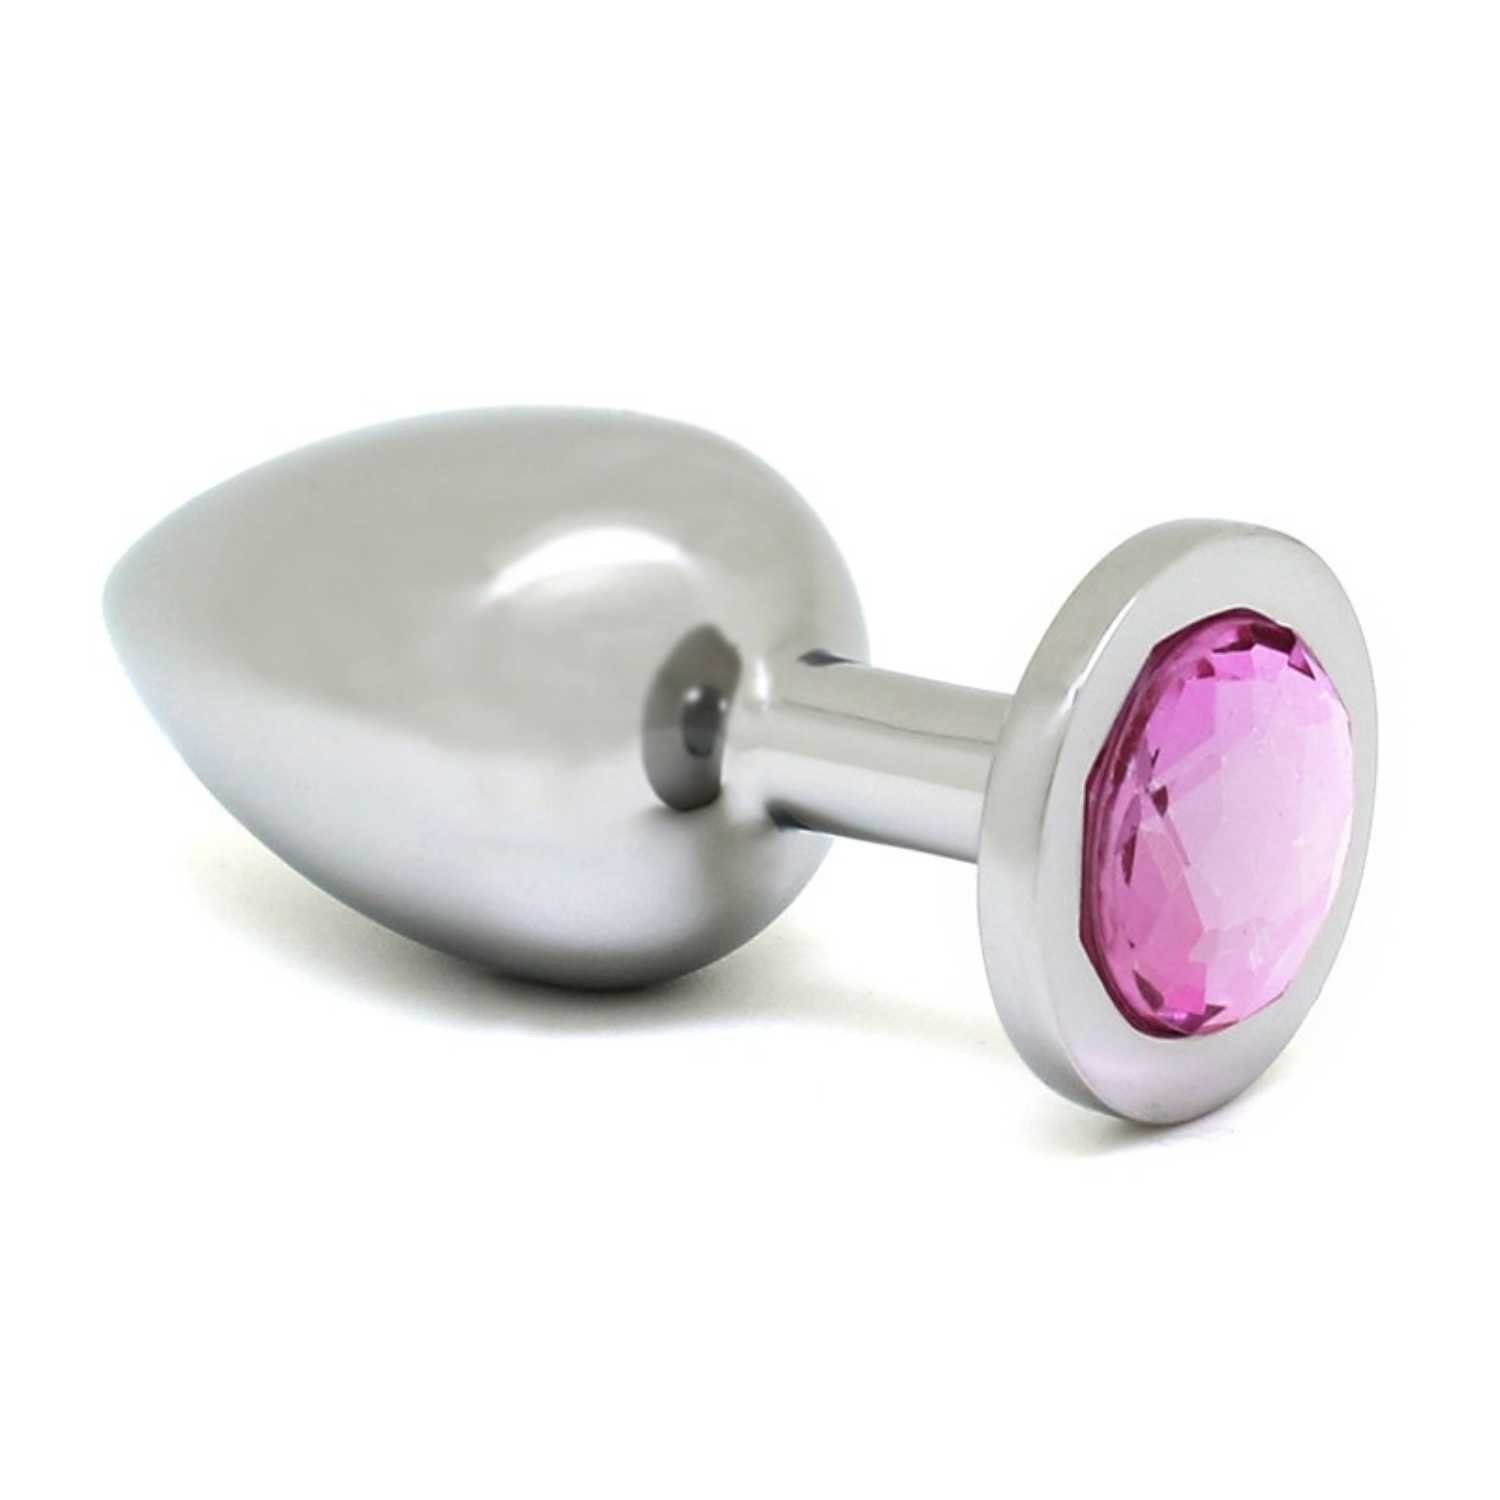 silber 4,0 cm Buttplug rosa Toys big Rimba Rimba Analplug